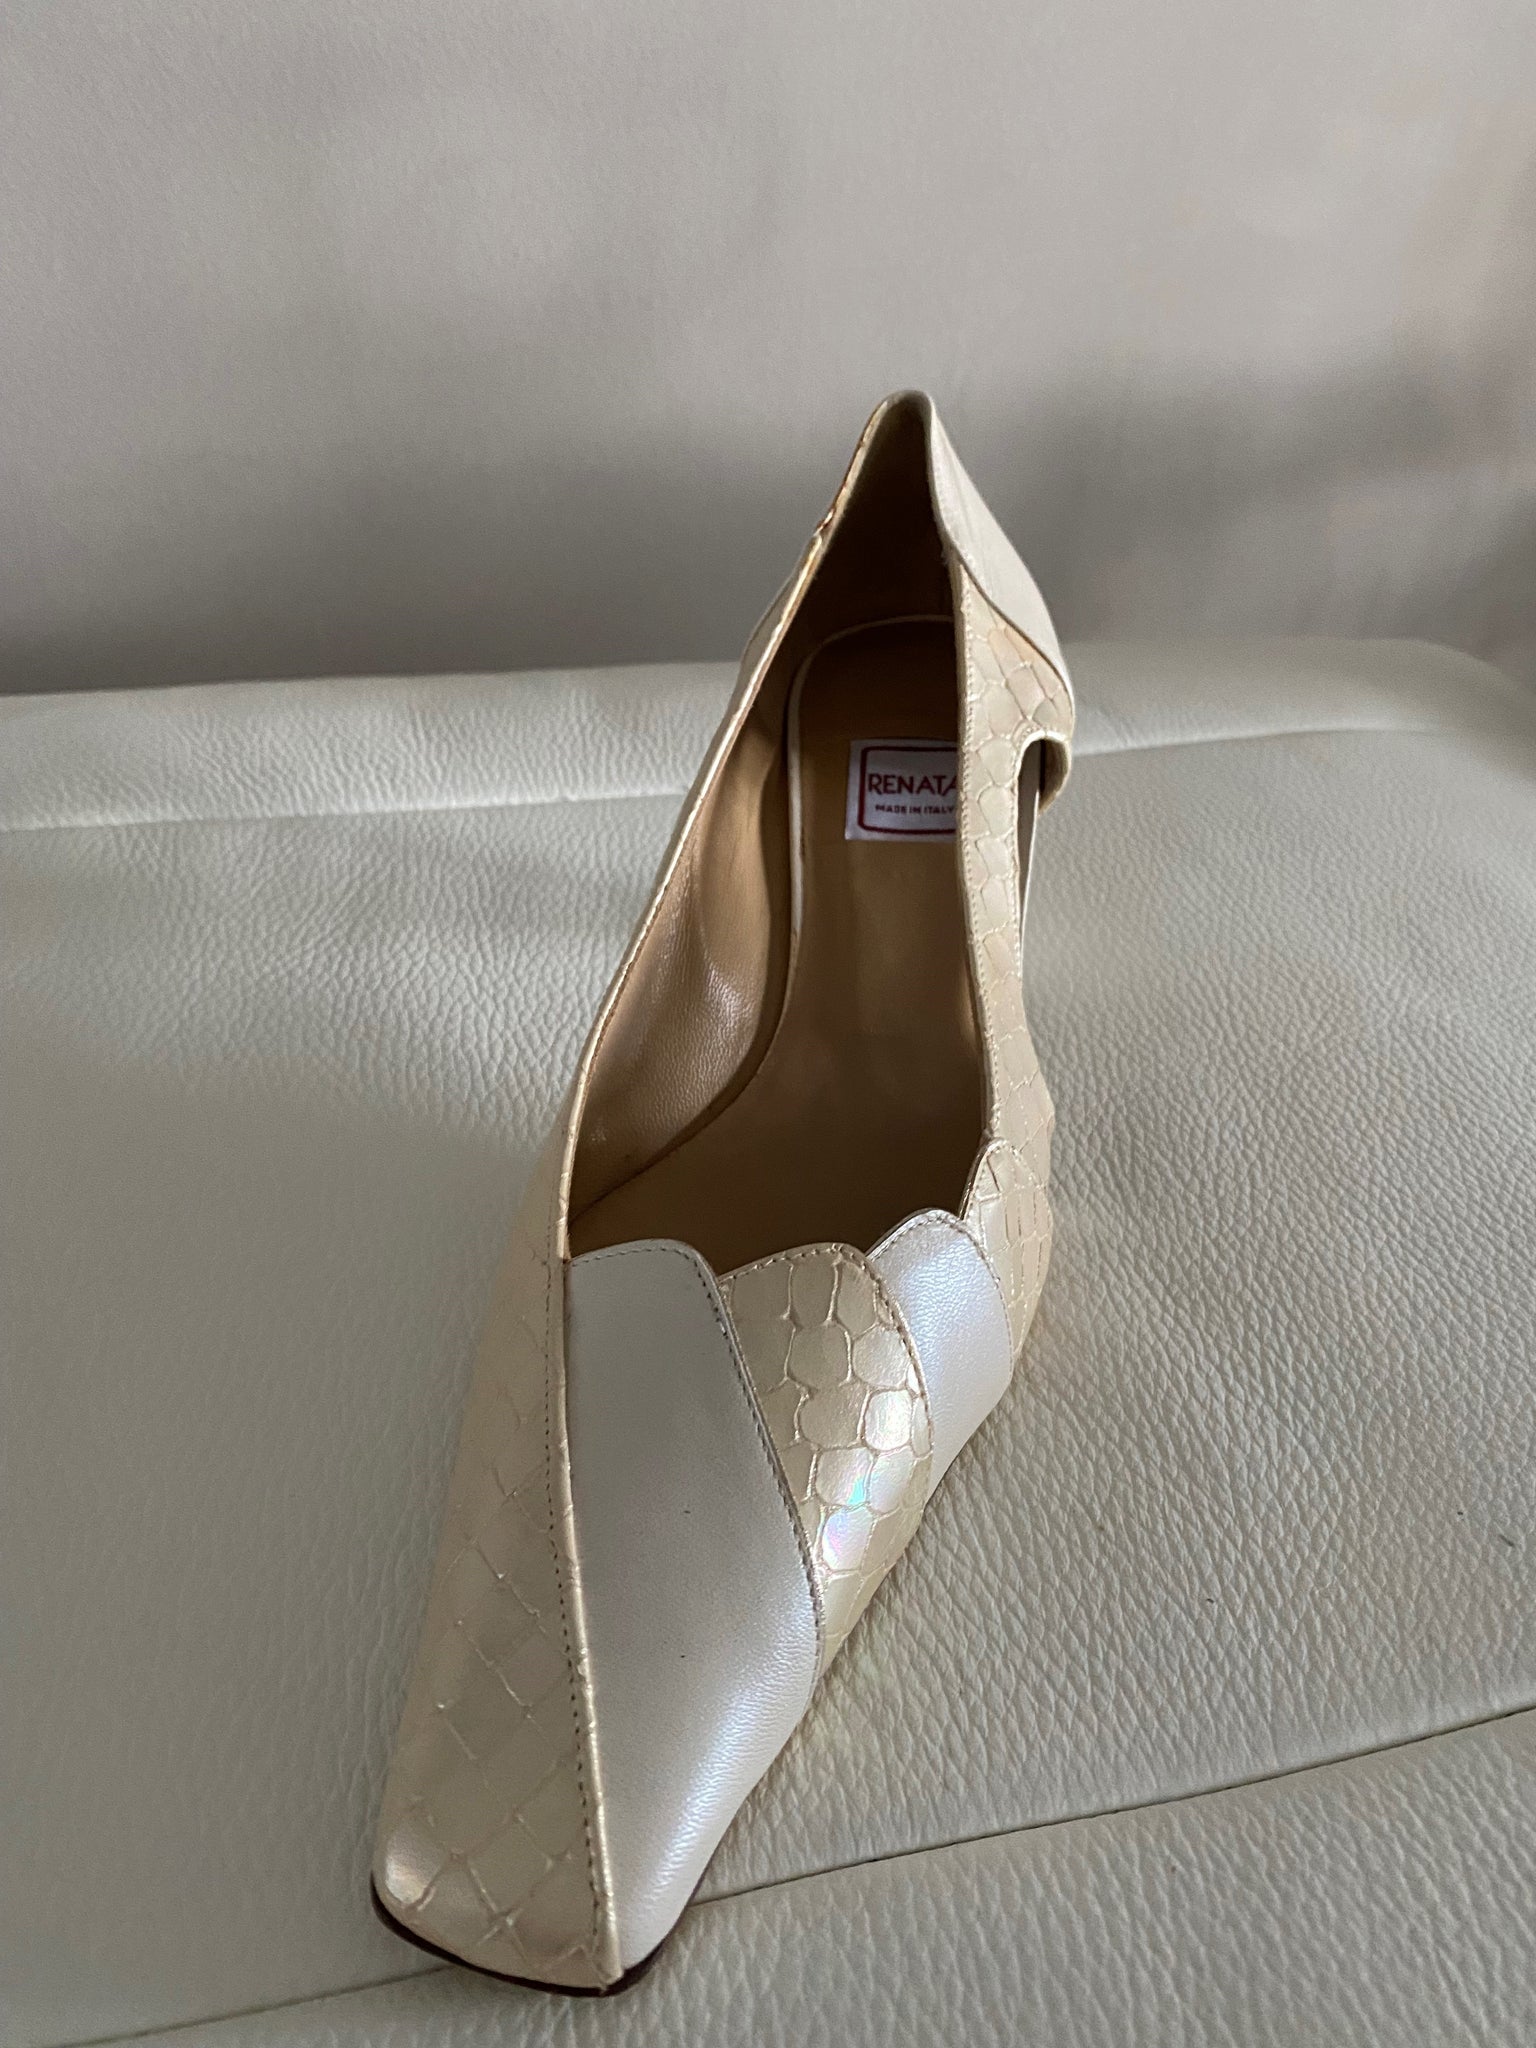 Renata Court shoe